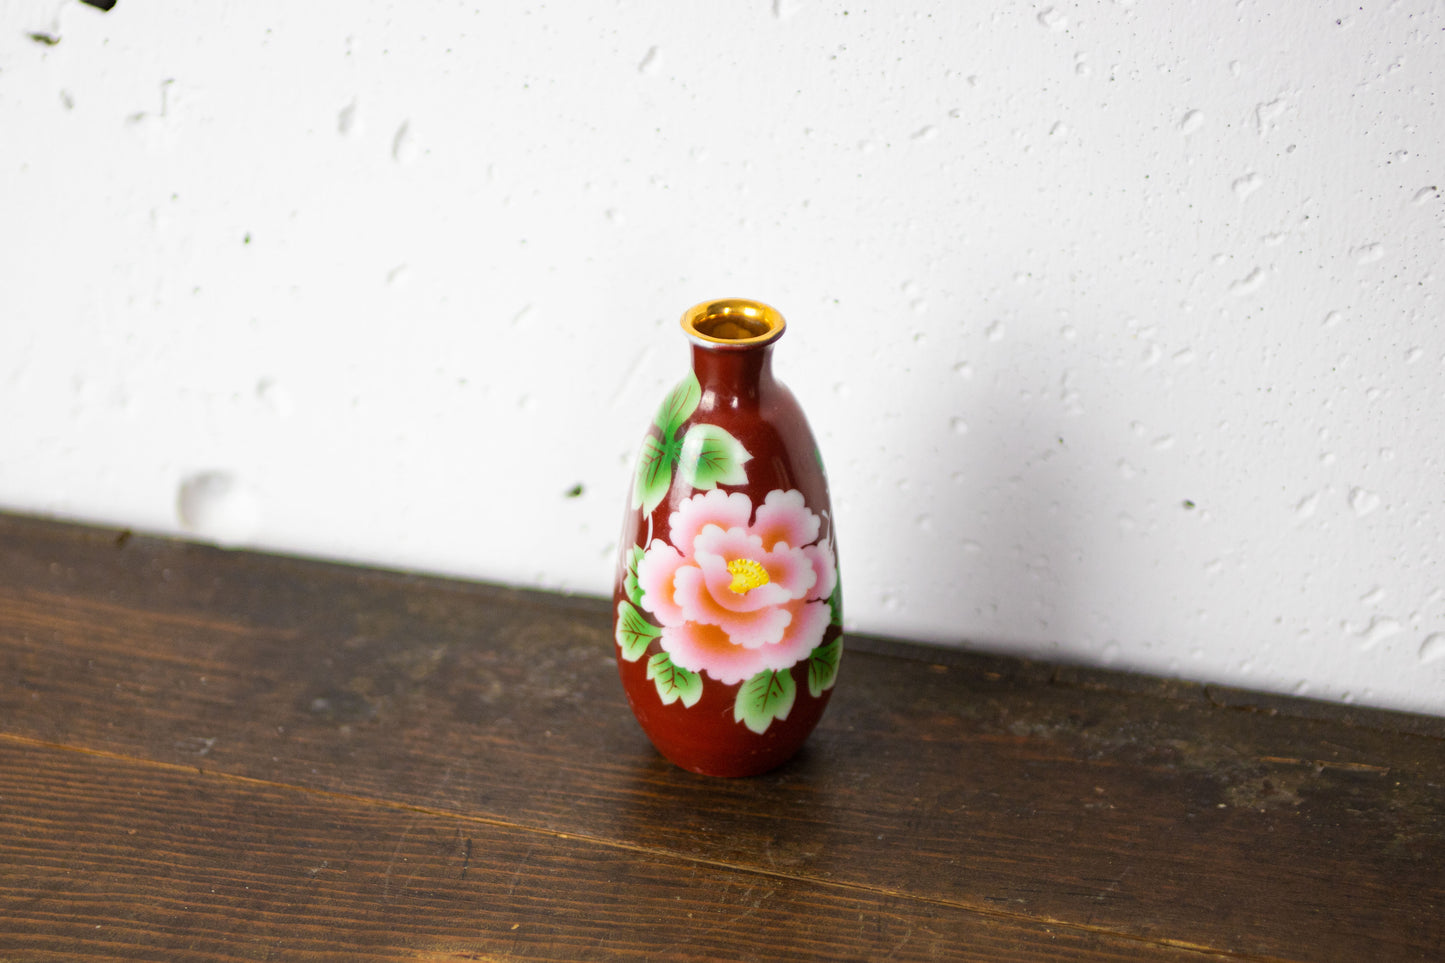 Large floral pattern sake bottle